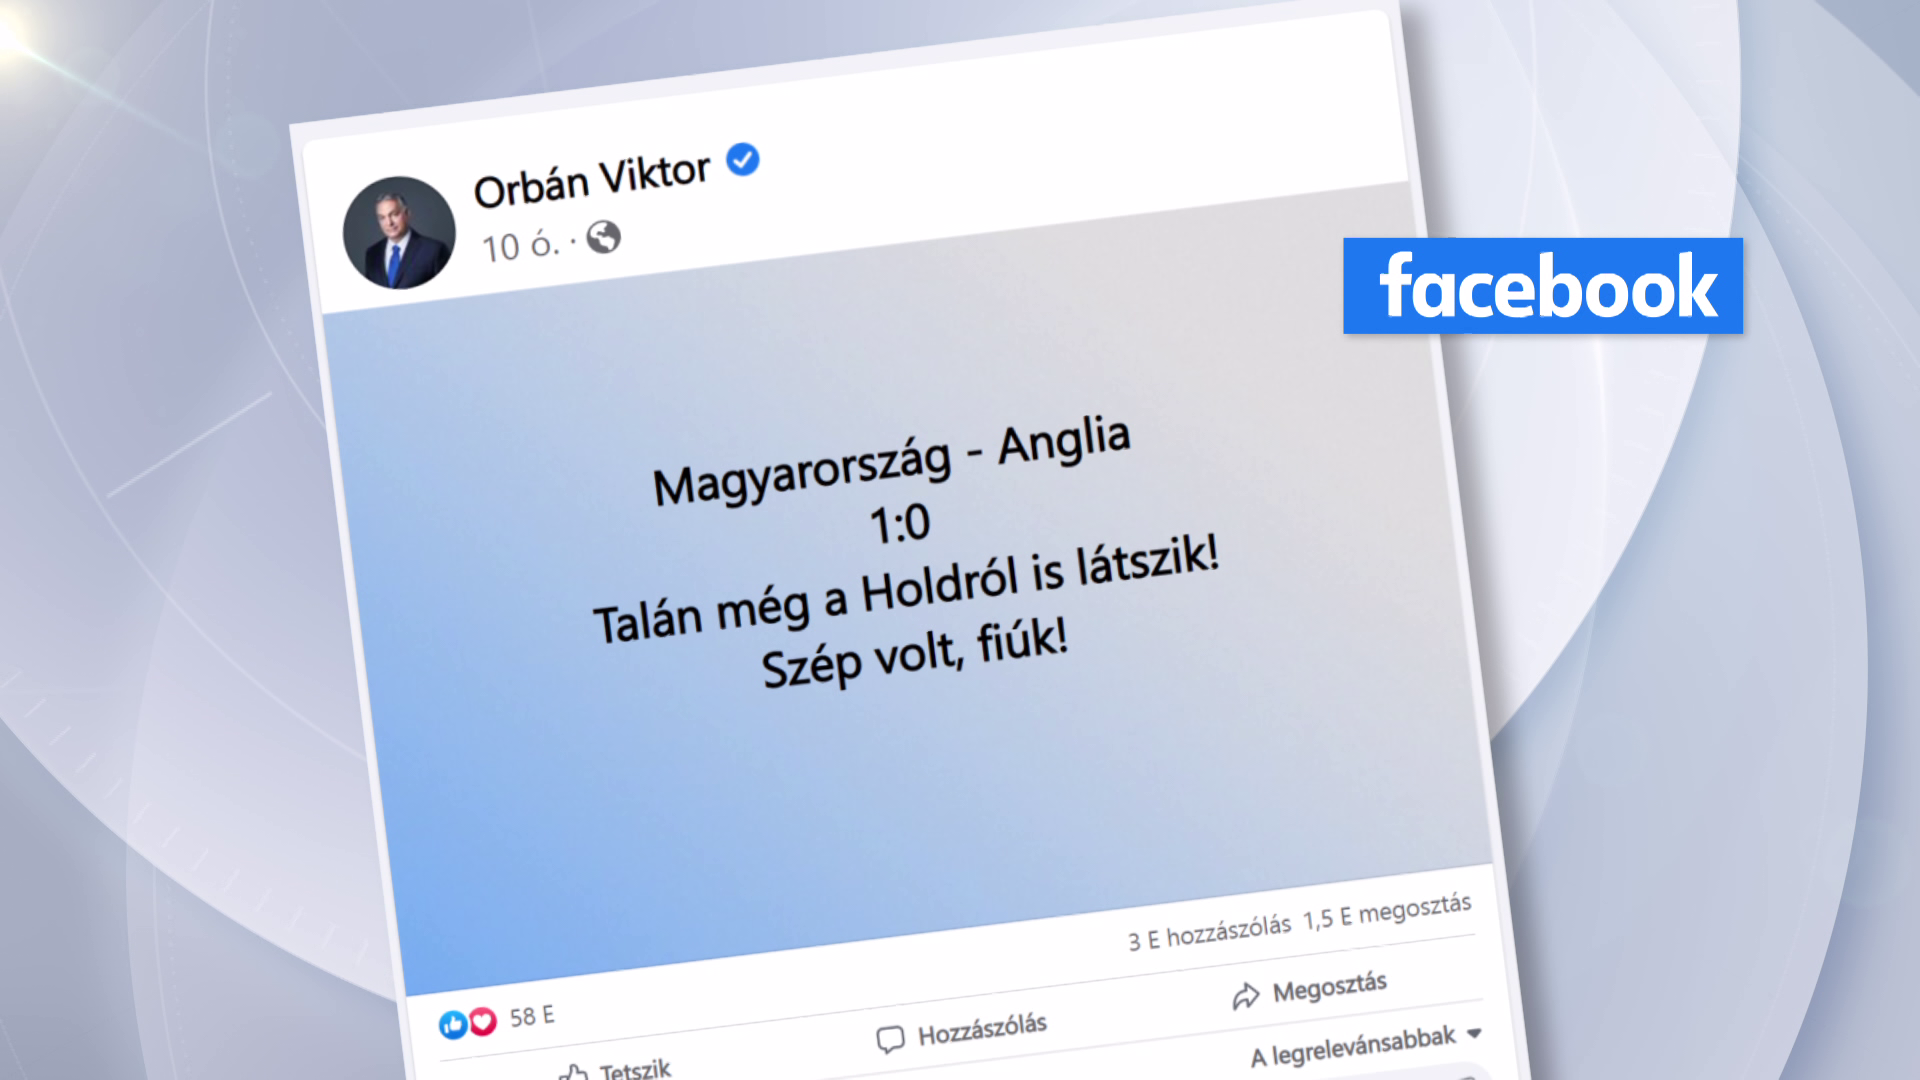 Orbán Viktor: Szép volt, fiúk! 